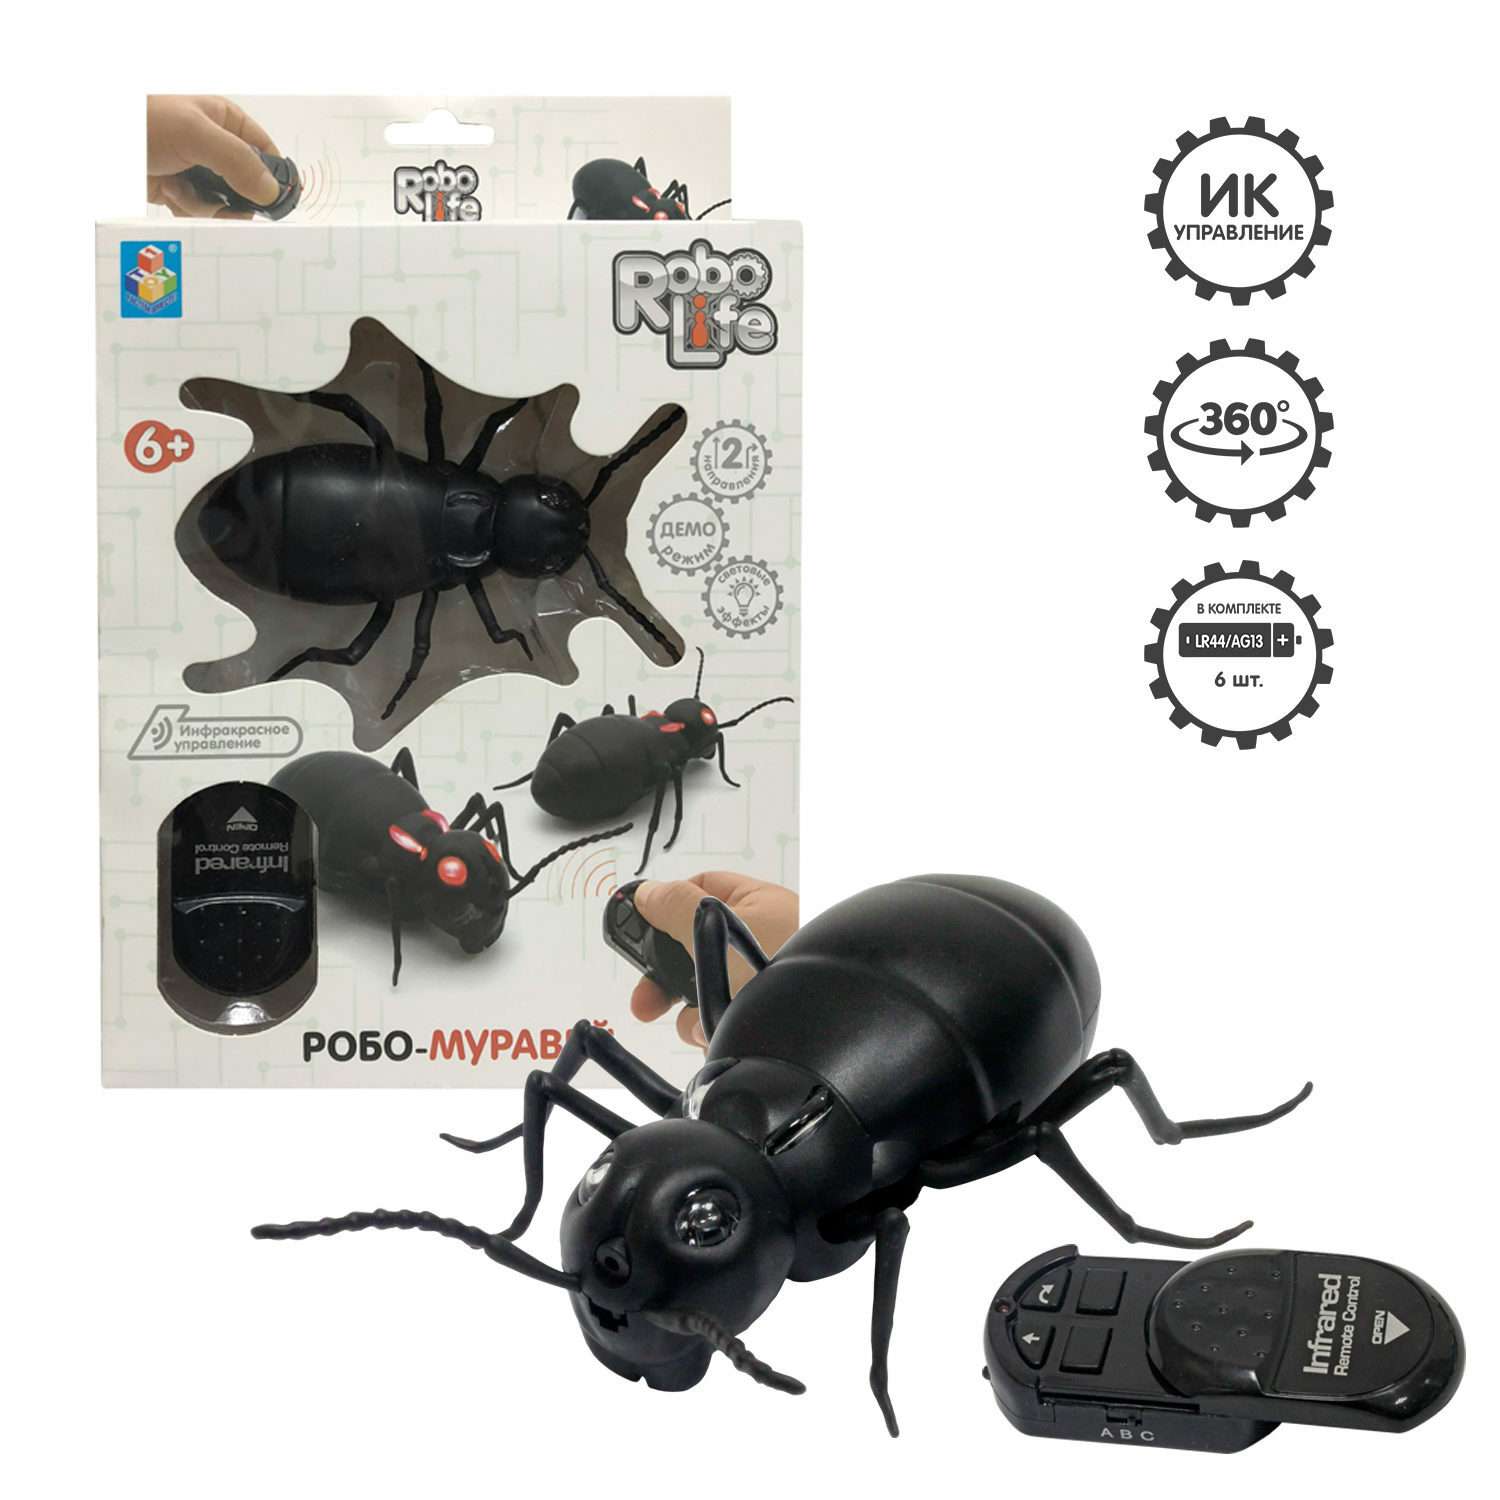 Интерактивная игрушка Robo Life Робо-муравей на ИК управлении со световыми эффектами - фото 3